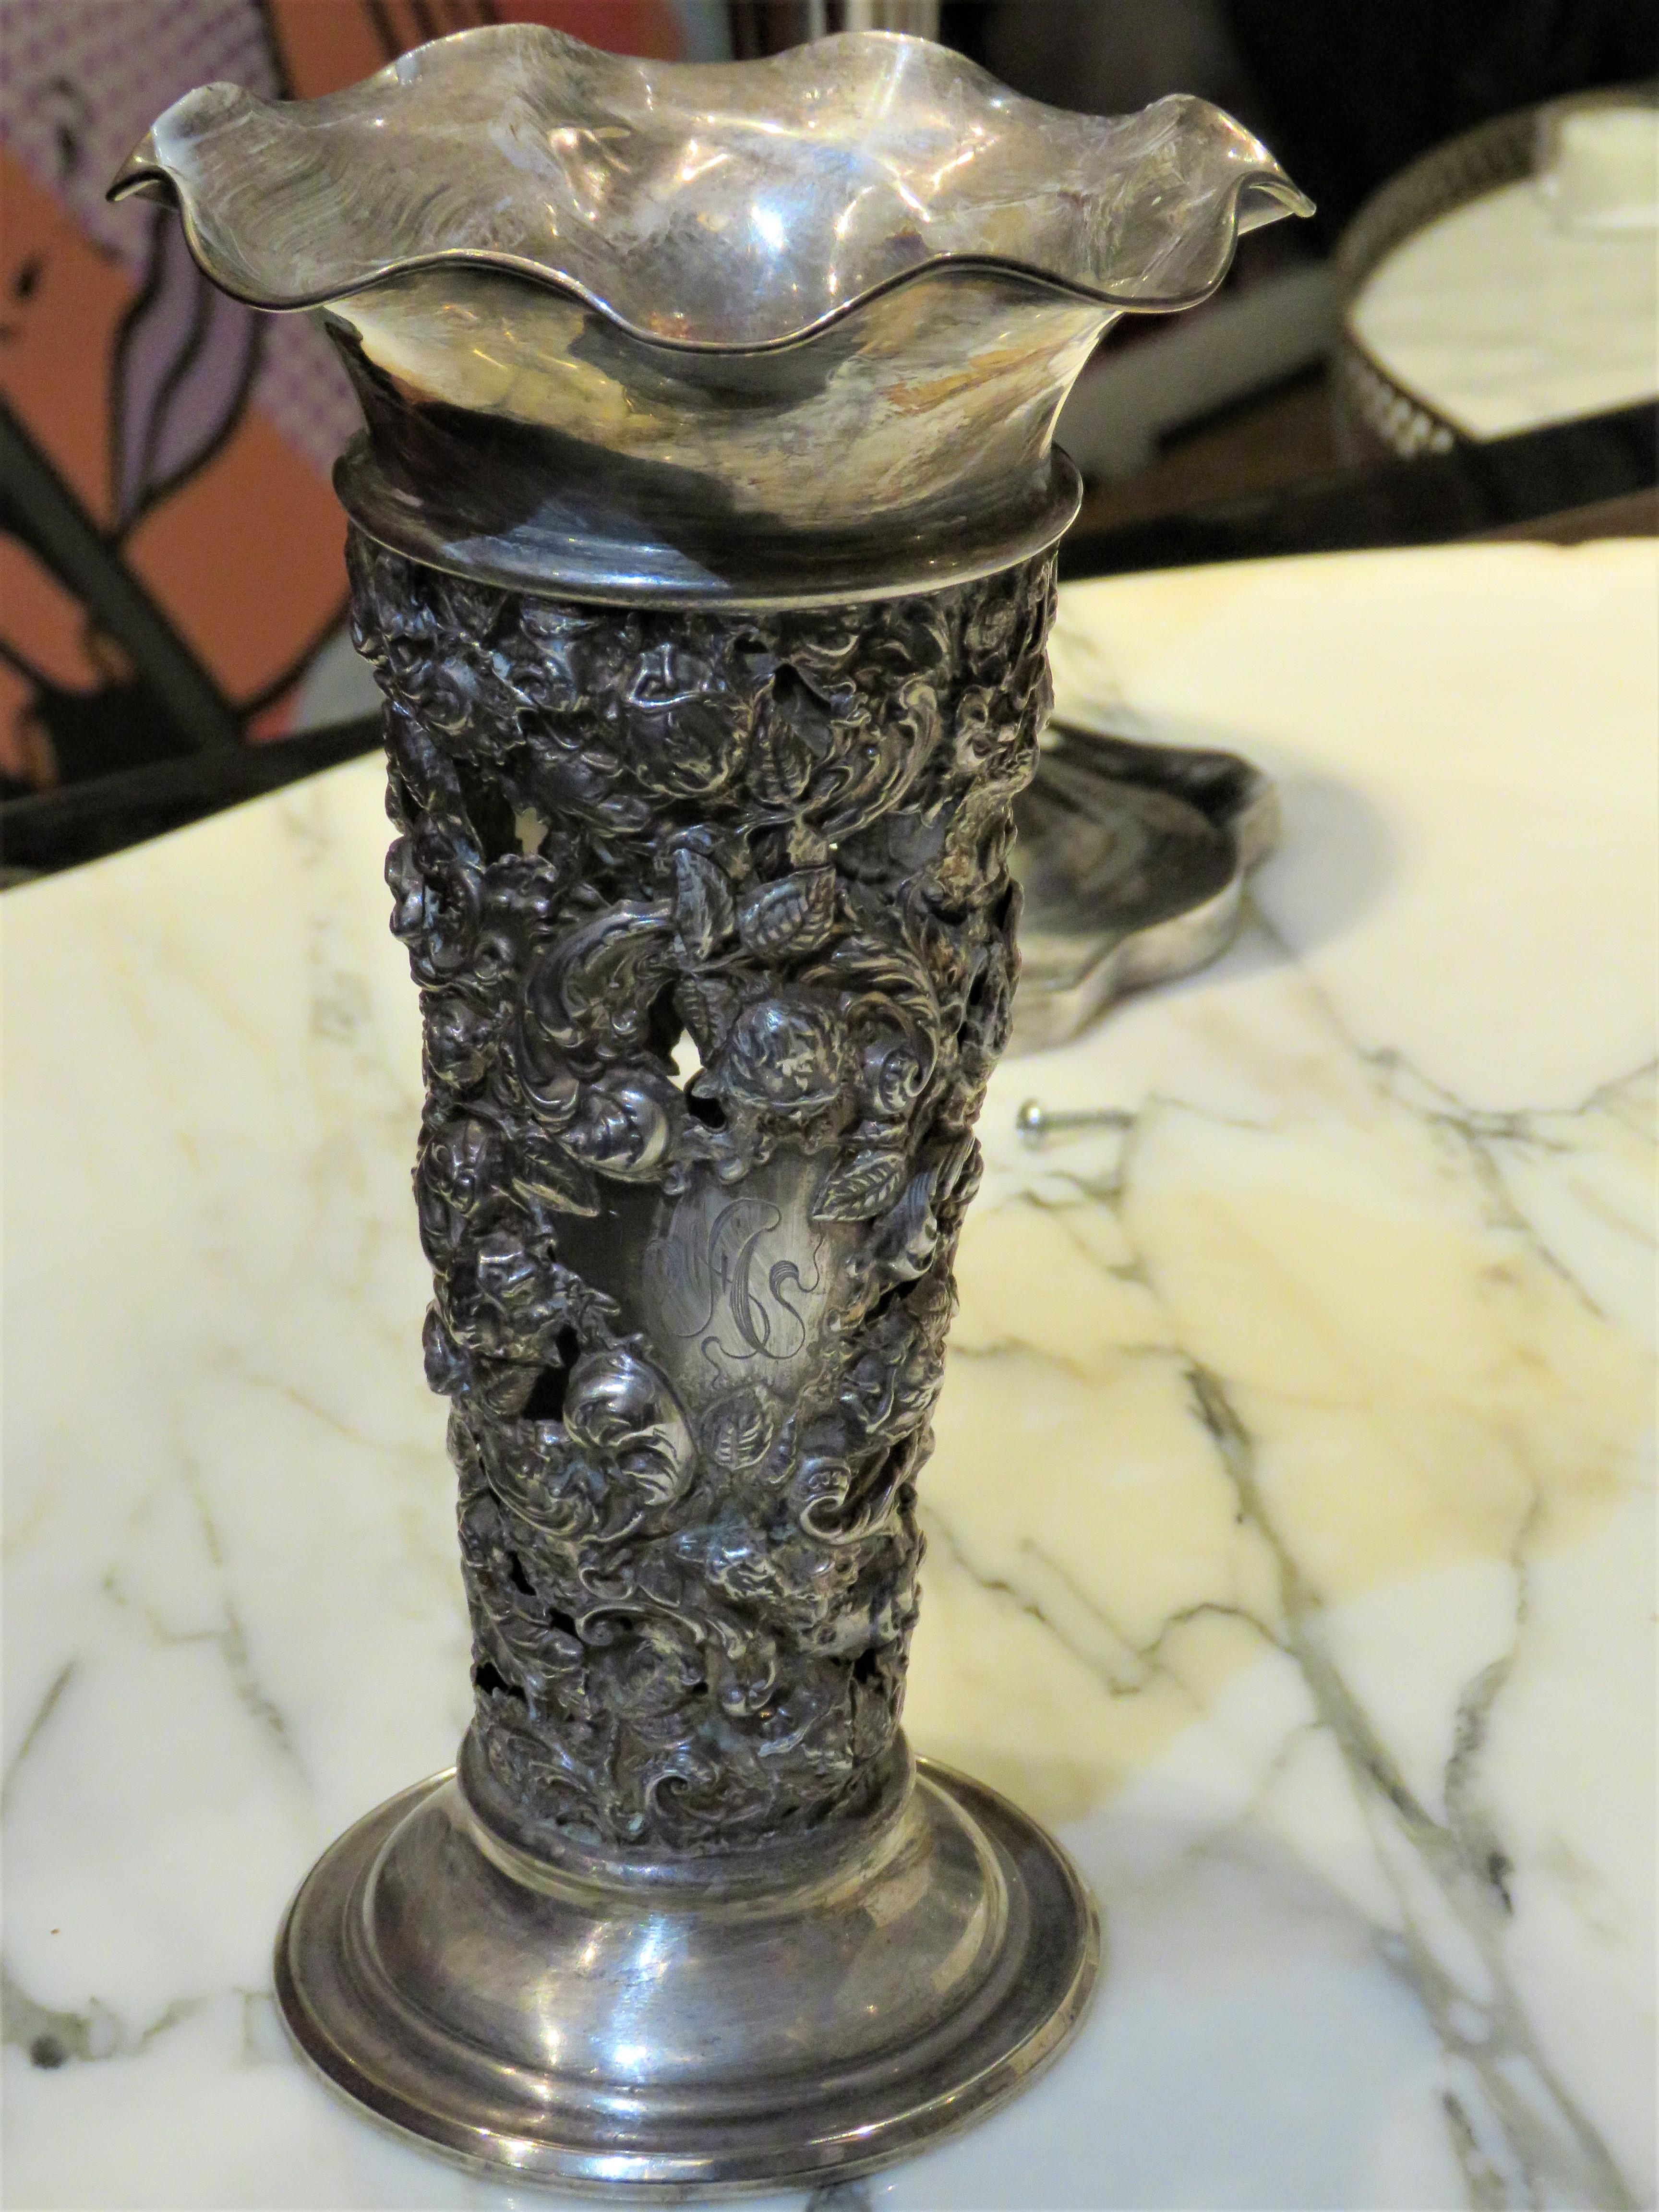 Der folgende Artikel, den wir anbieten, ist ein seltenes Monumentalstück aus dem 19. Sterling Silber Vase mit Blattwerk und scrollwork repousse Dekoration im gesamten. Sockel mit Sterling 7 Zoll auf der Unterseite. Entnommen aus einem sechs